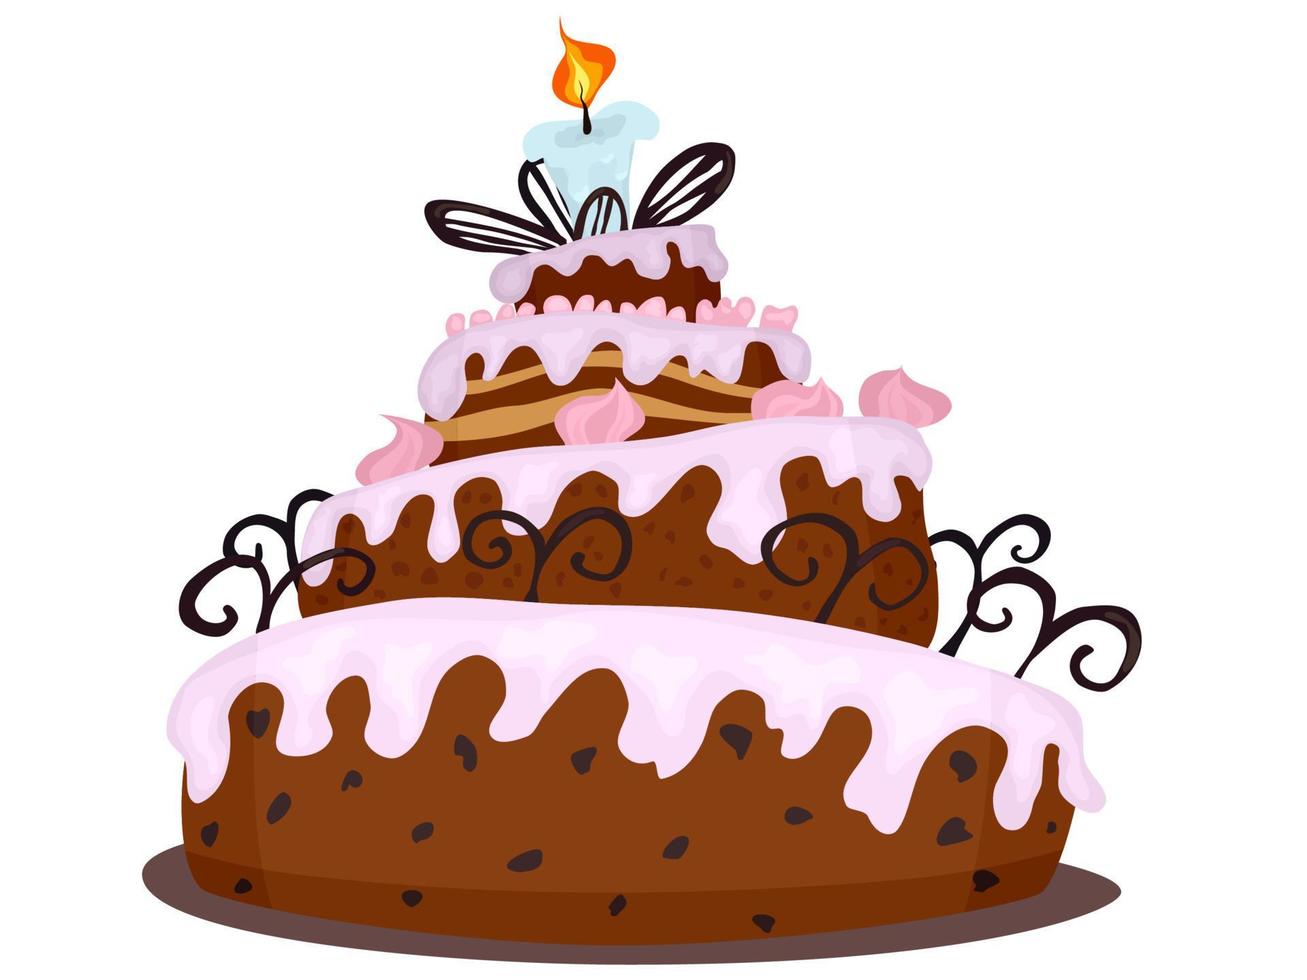 gran pastel de chocolate con crema dibujo dibujos animados nuevo vector